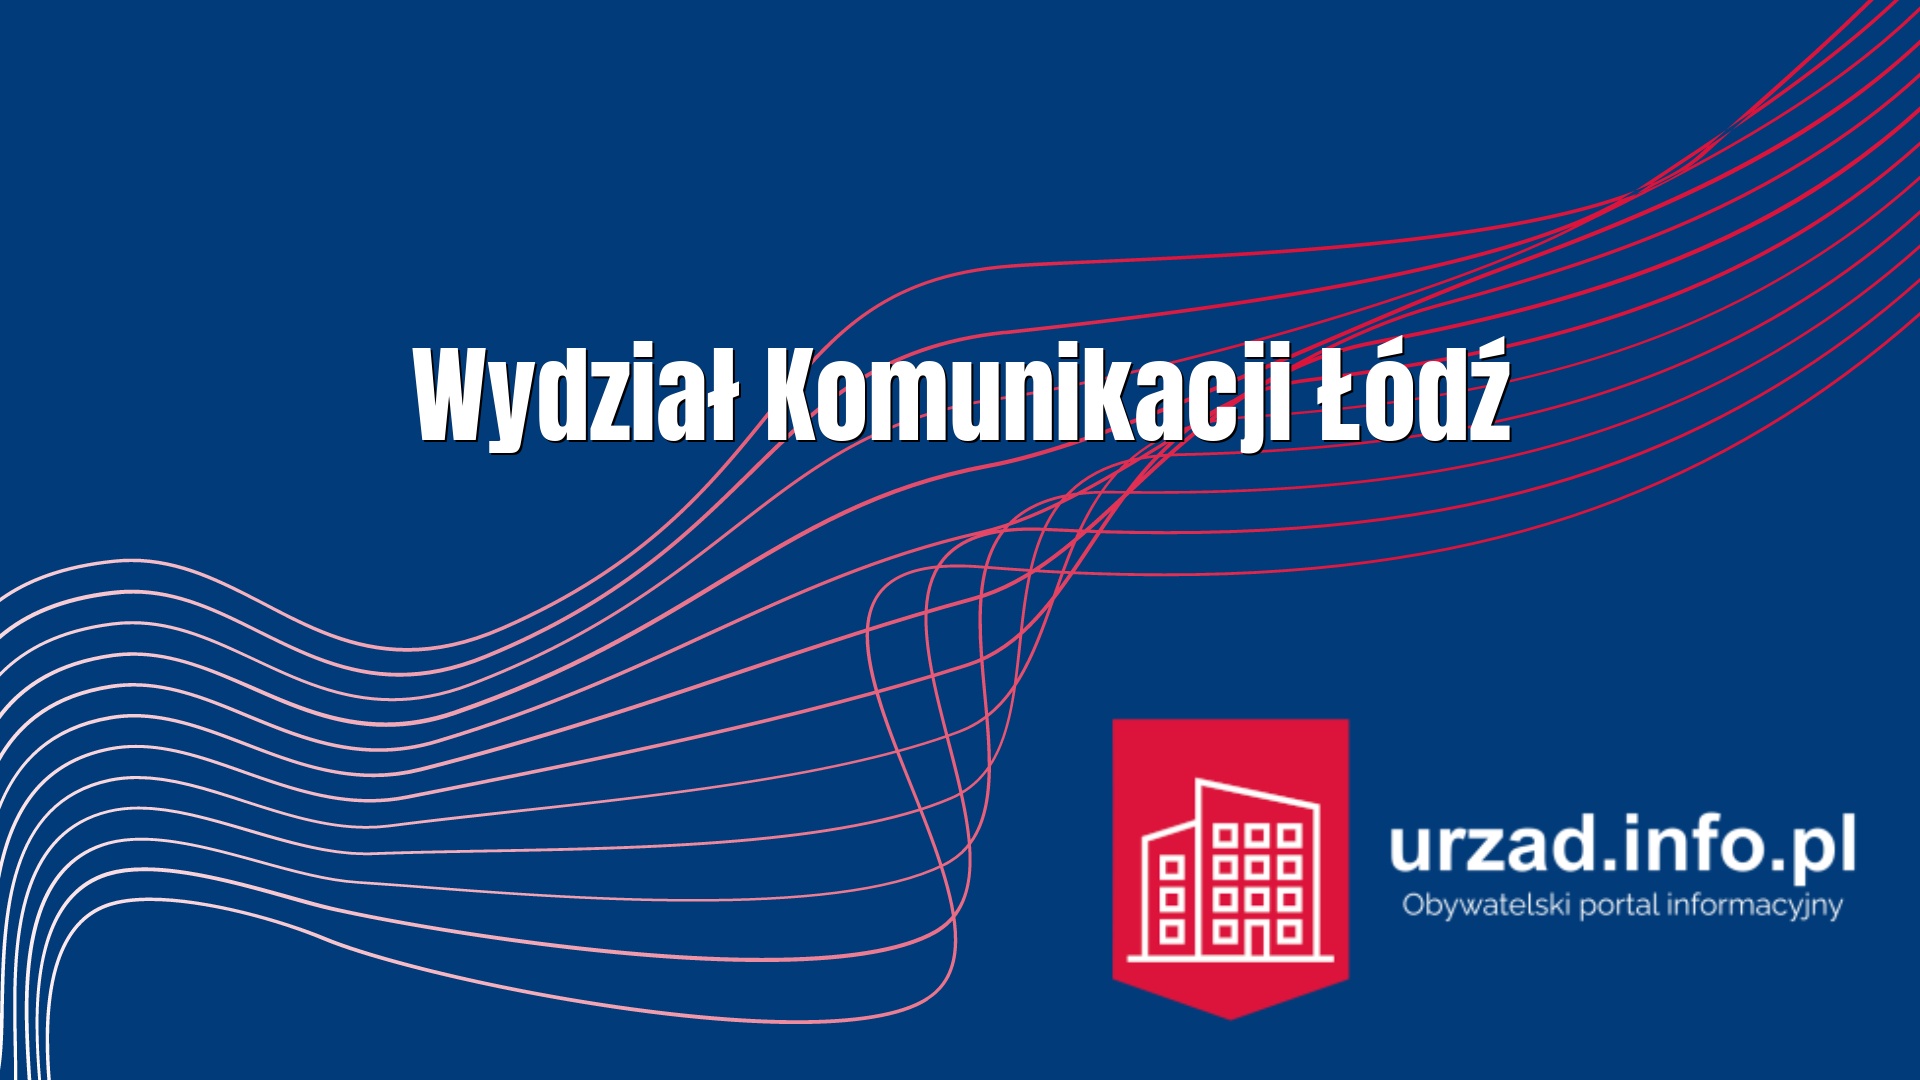 Wydział Komunikacji Łódź